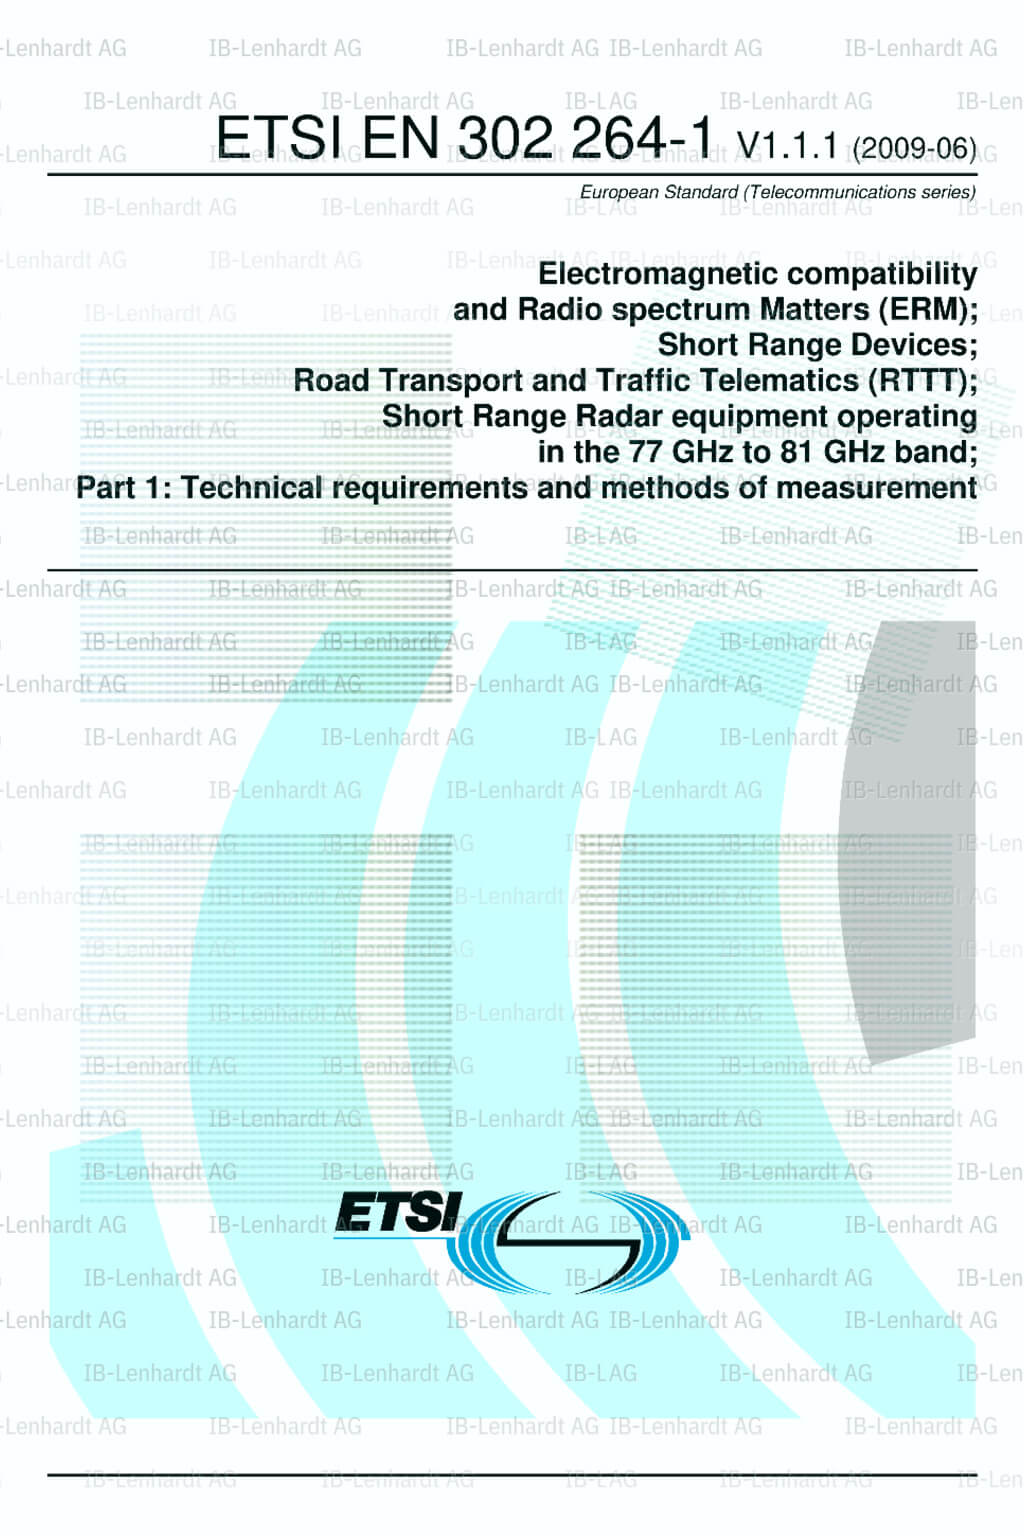 ETSI EN 302 264-1 V1.1.1 